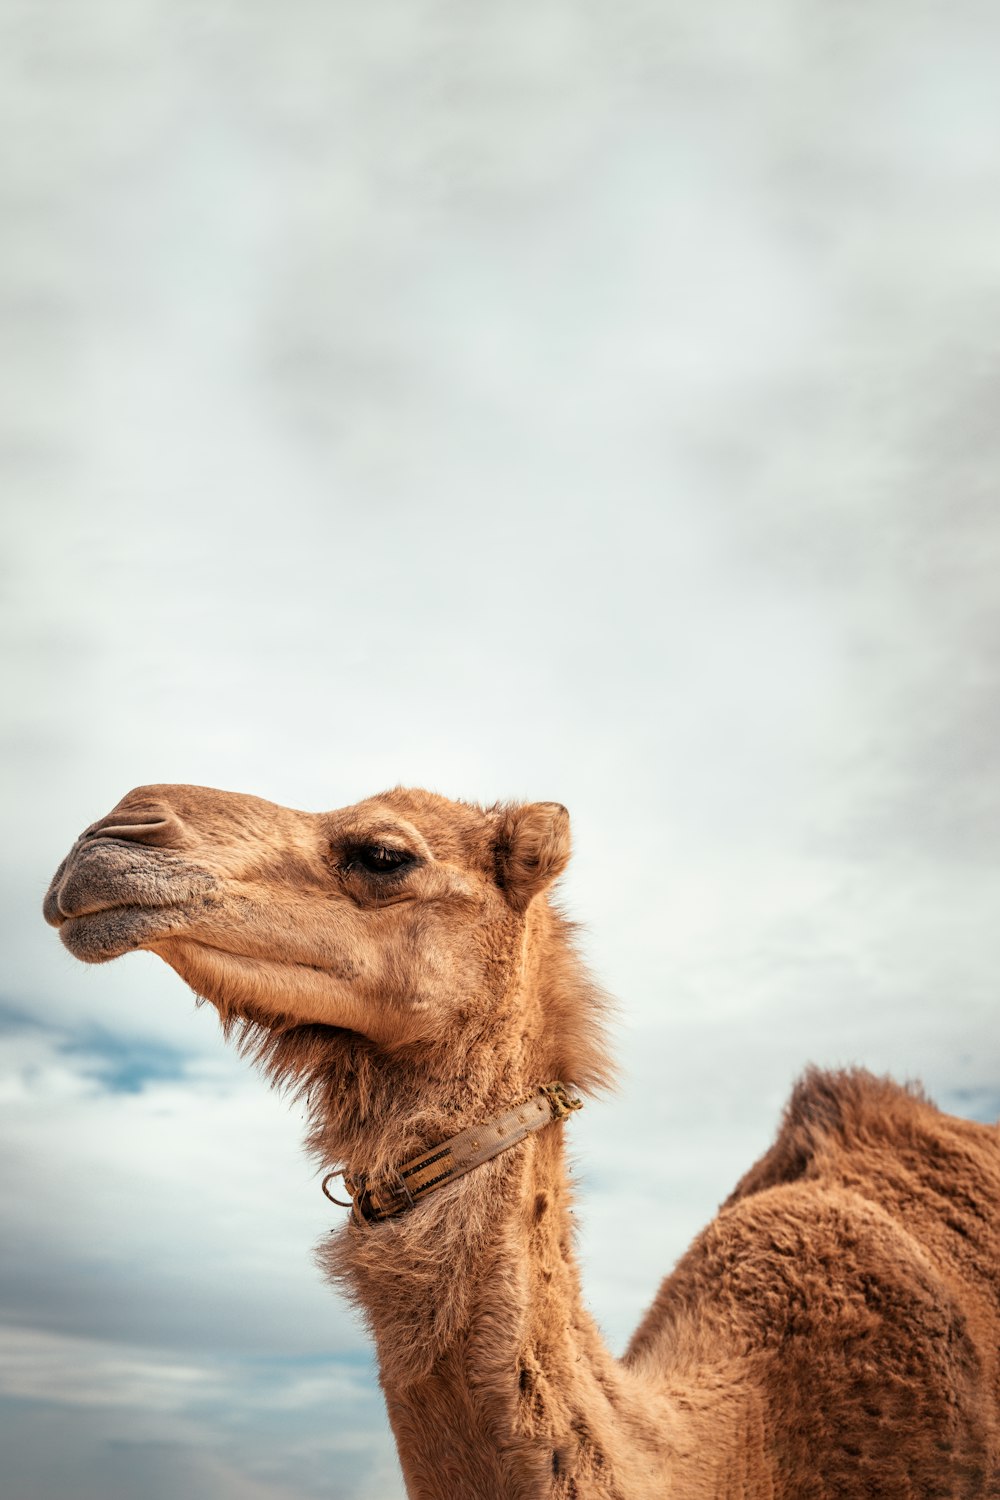 camelo marrom sob nuvens brancas durante o dia